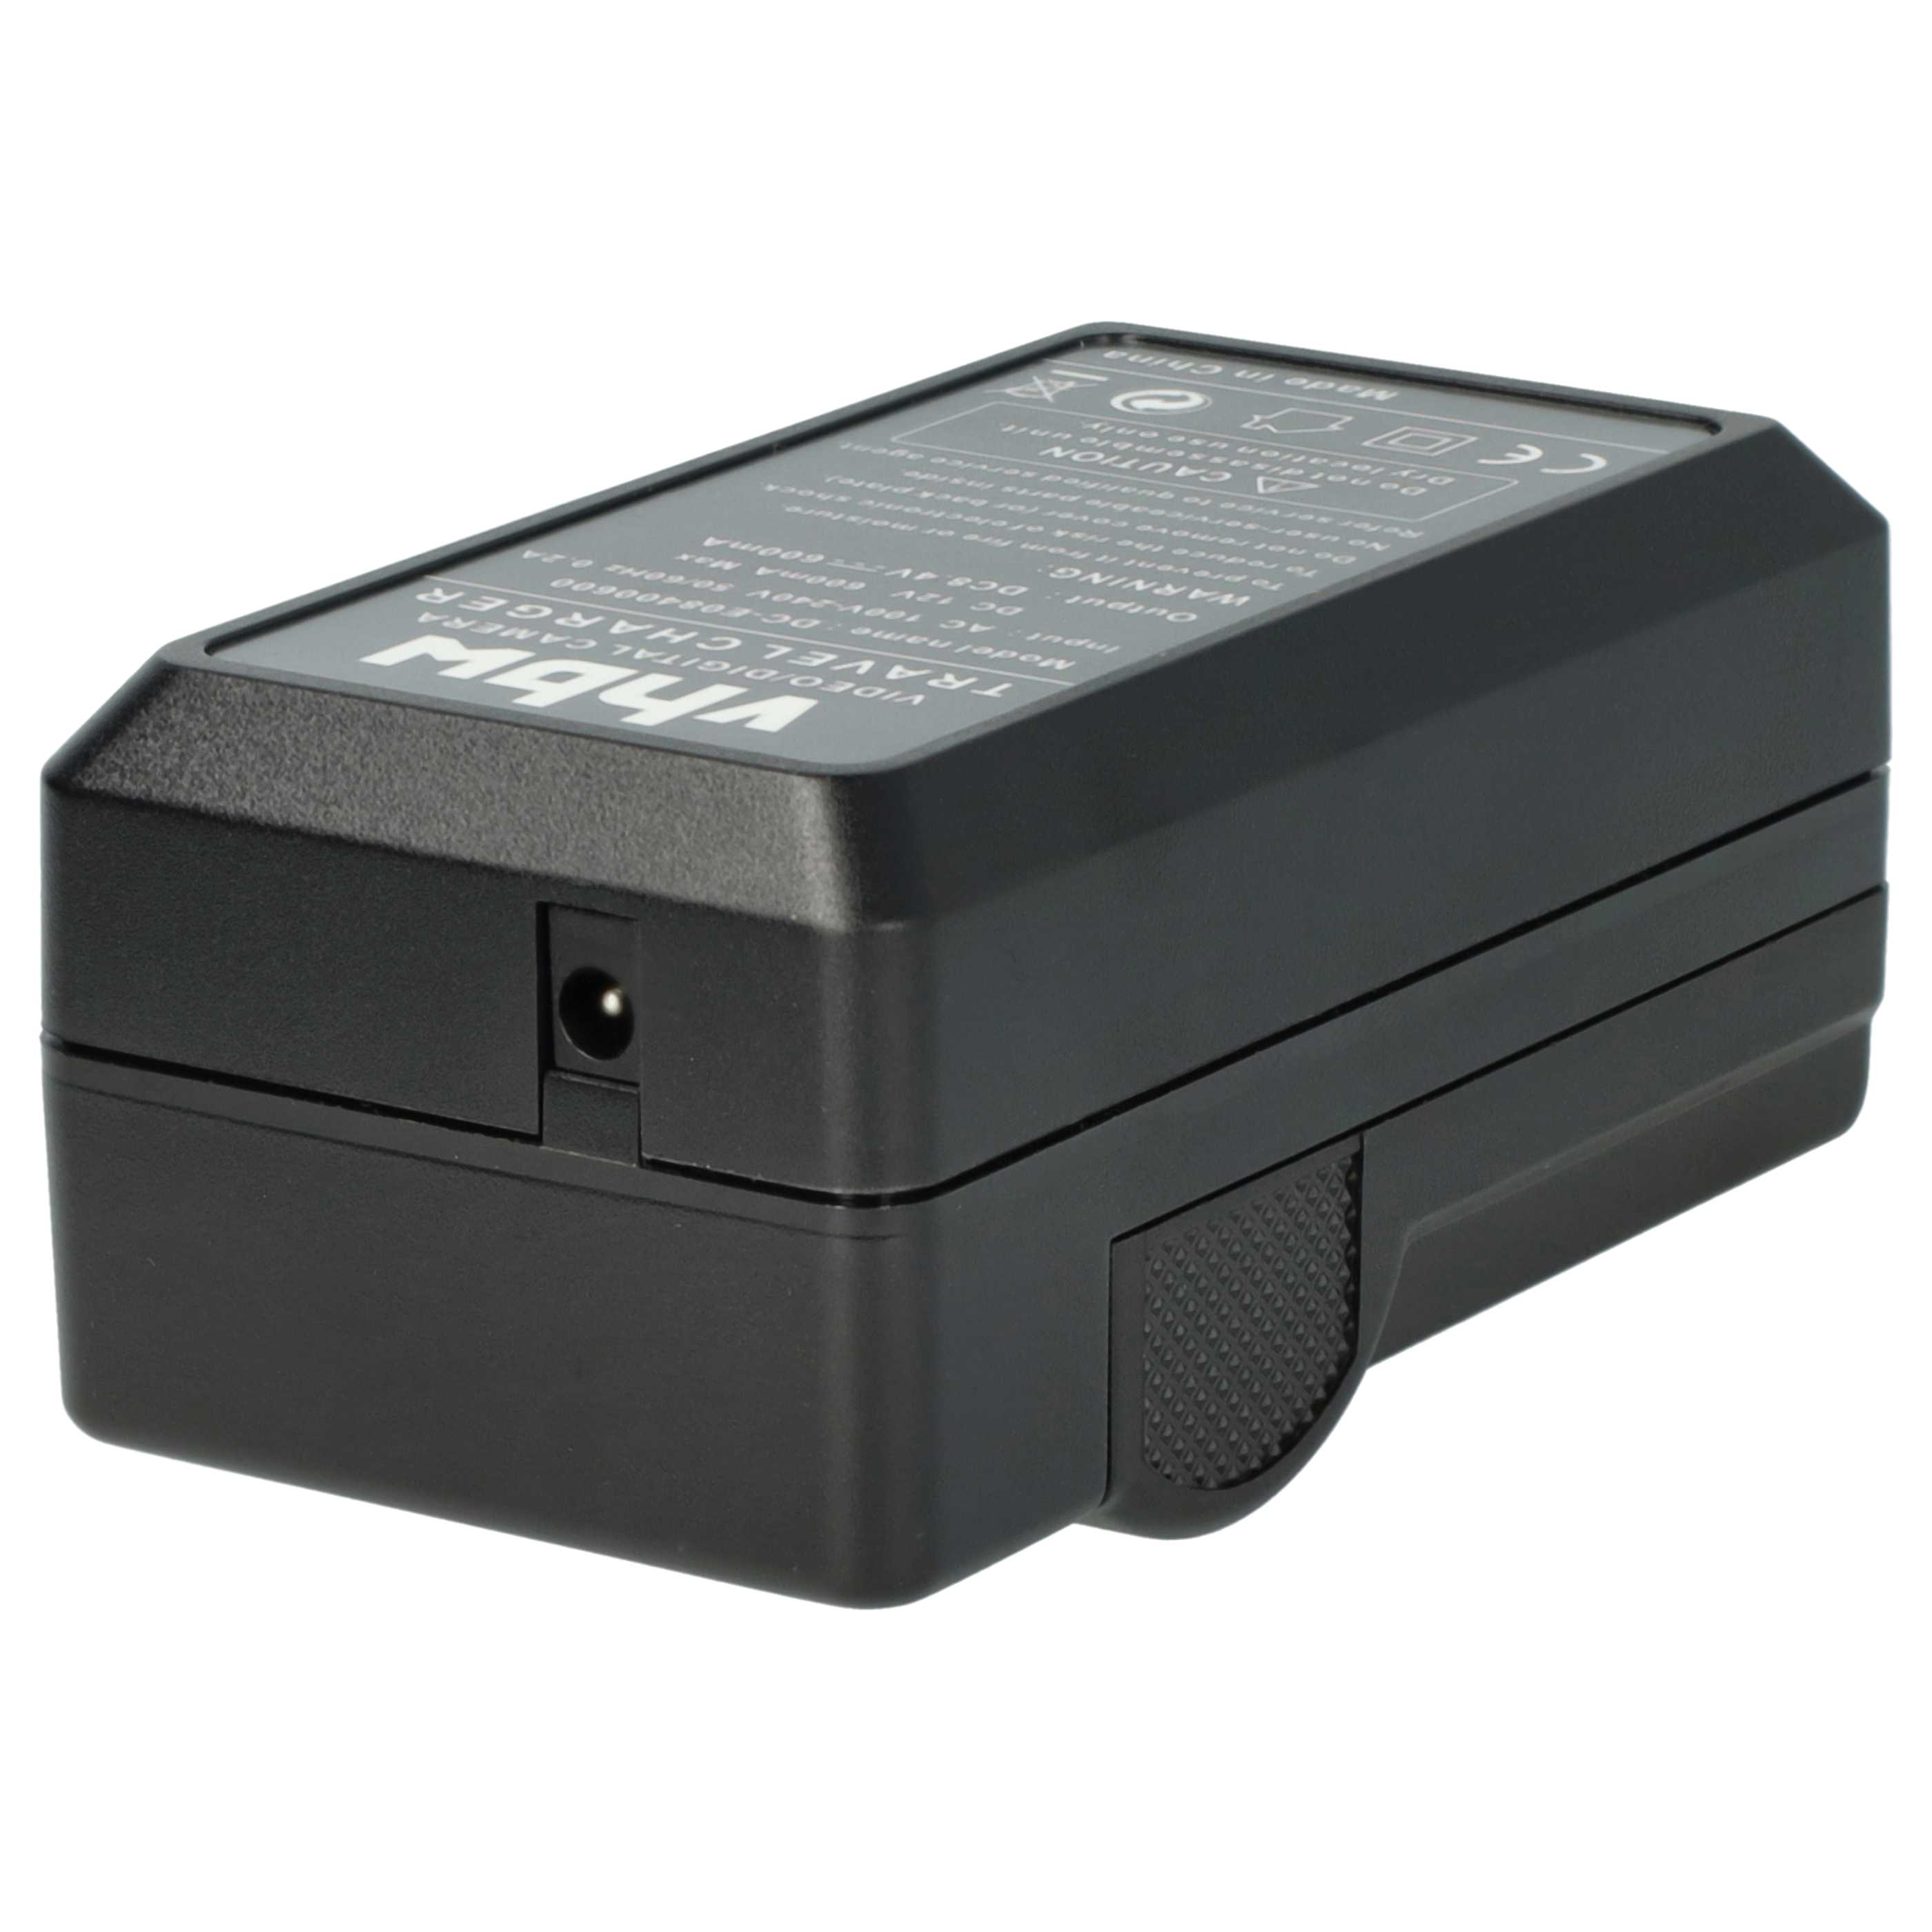 Akku Ladegerät passend für Canon LP-E8 Kamera u.a. - 0,6 A, 8,4 V